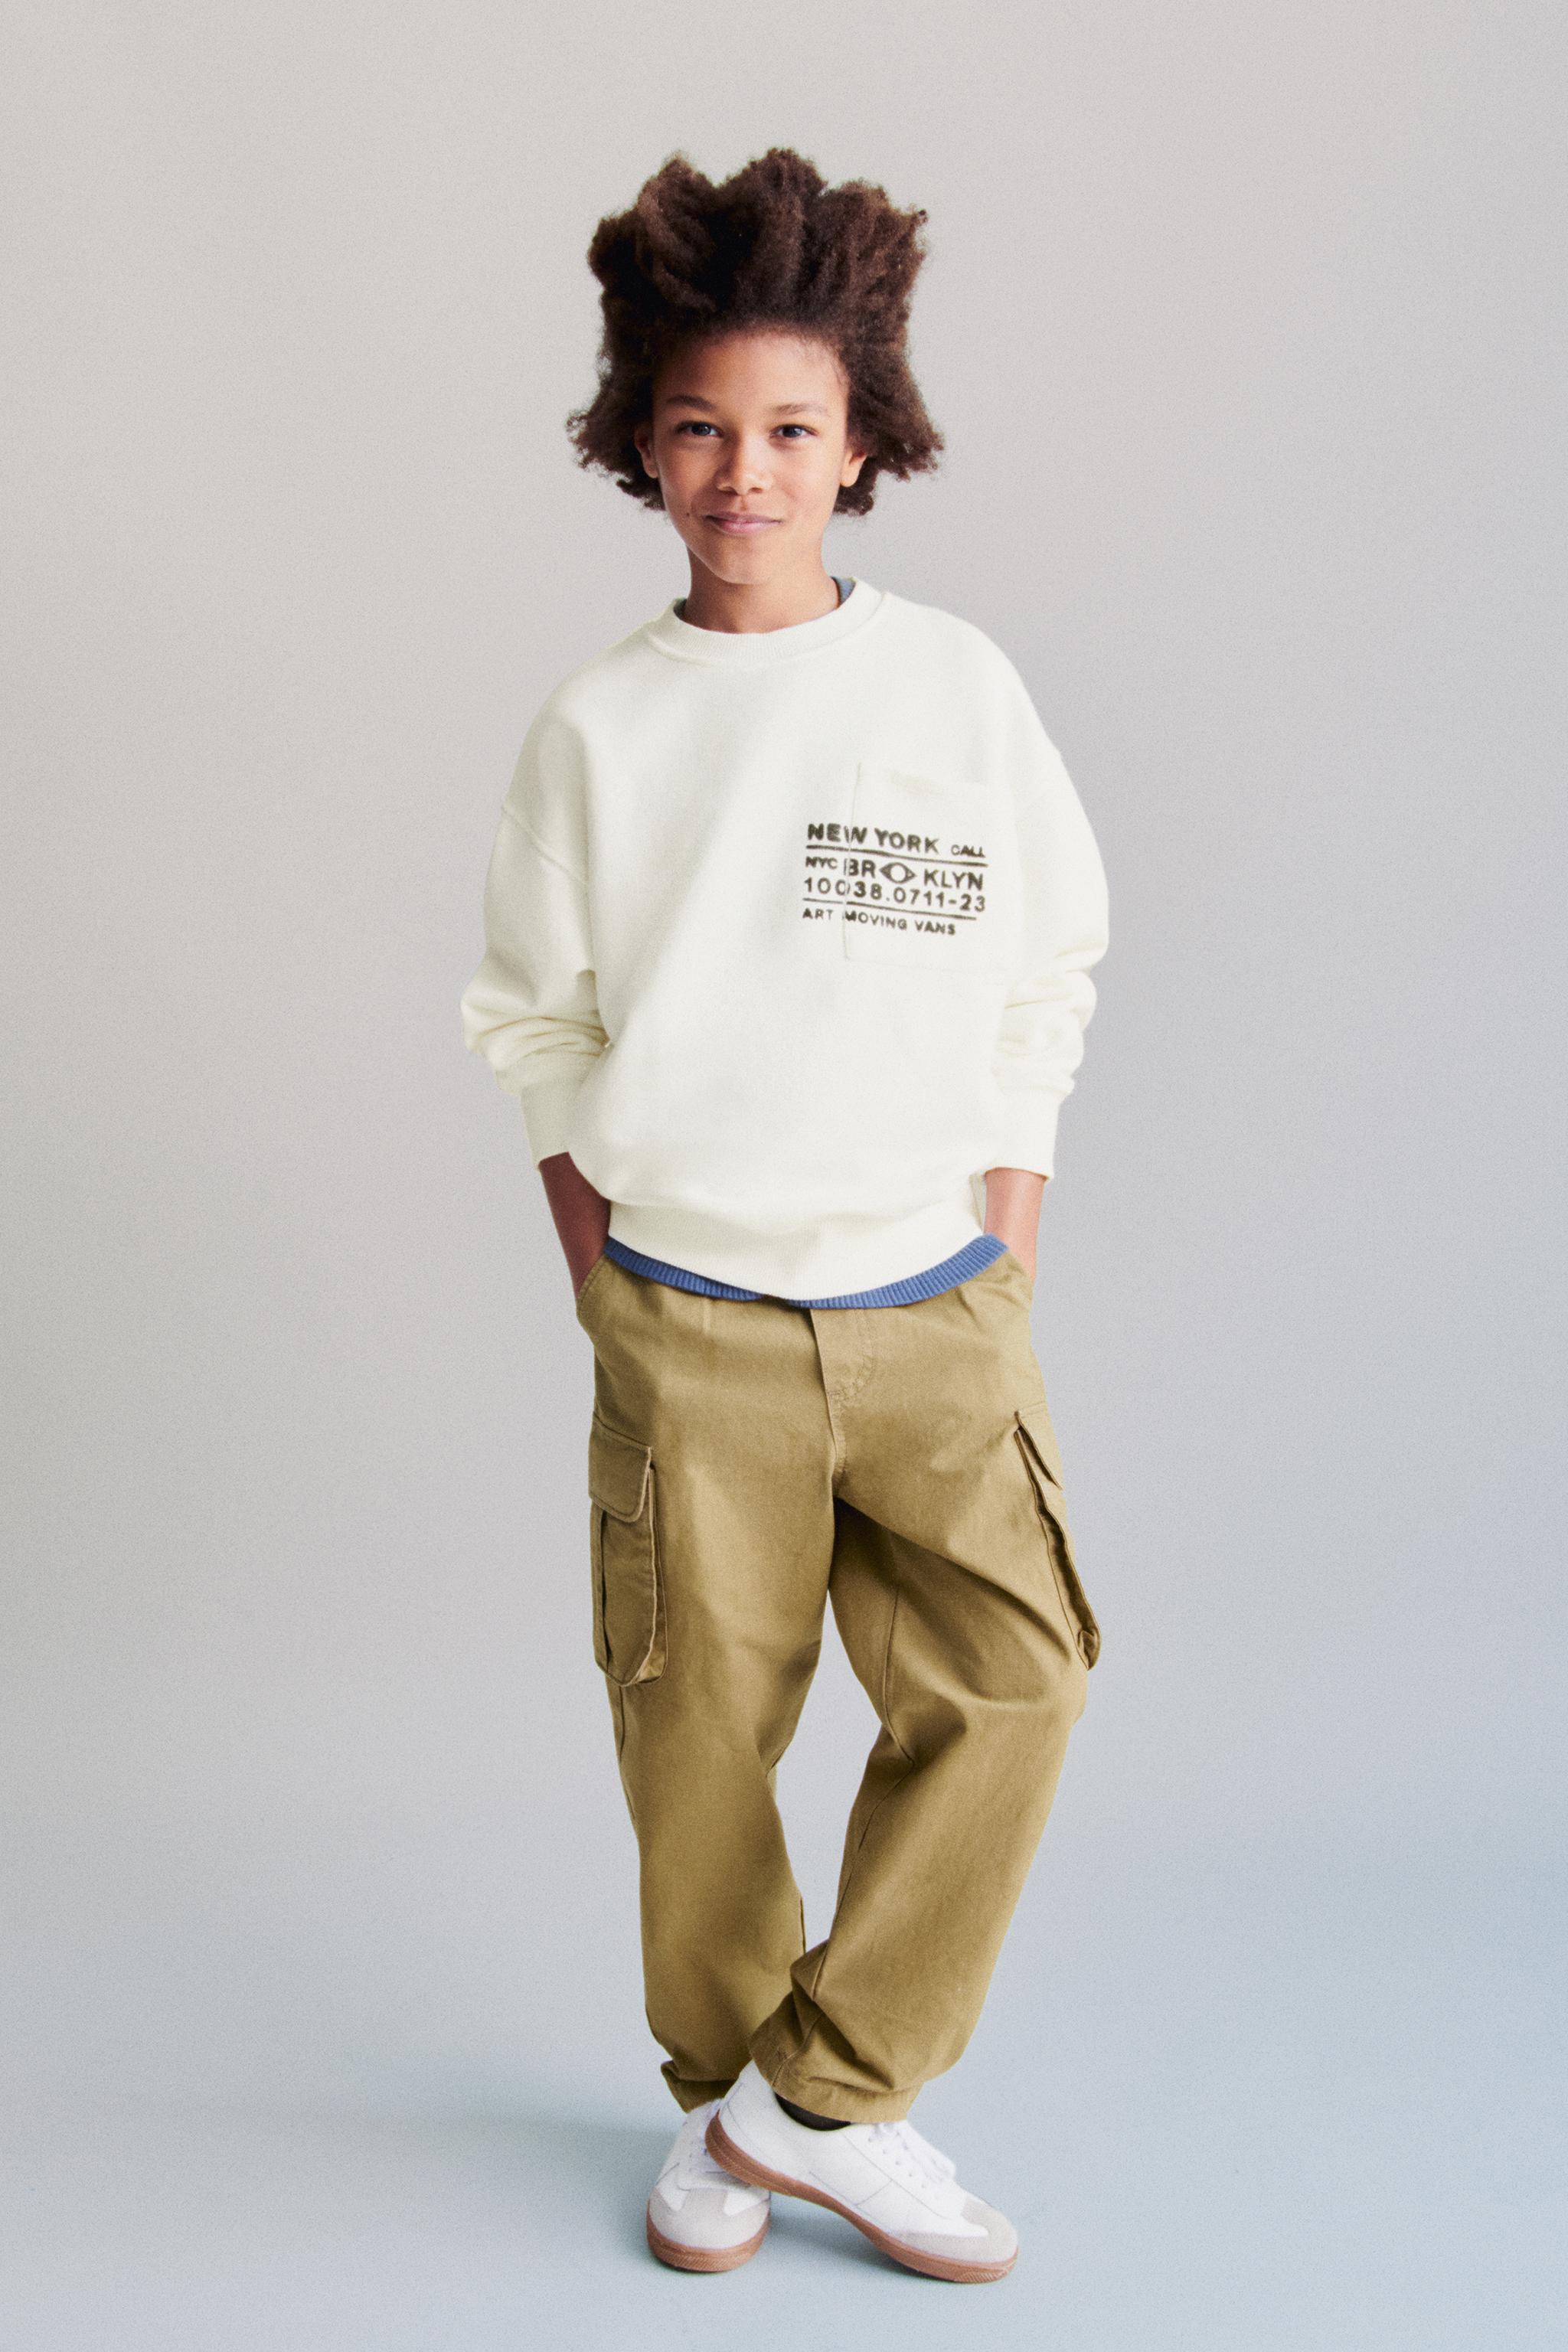 男の子用スウェットシャツ | 最新コレクション | ZARA 日本